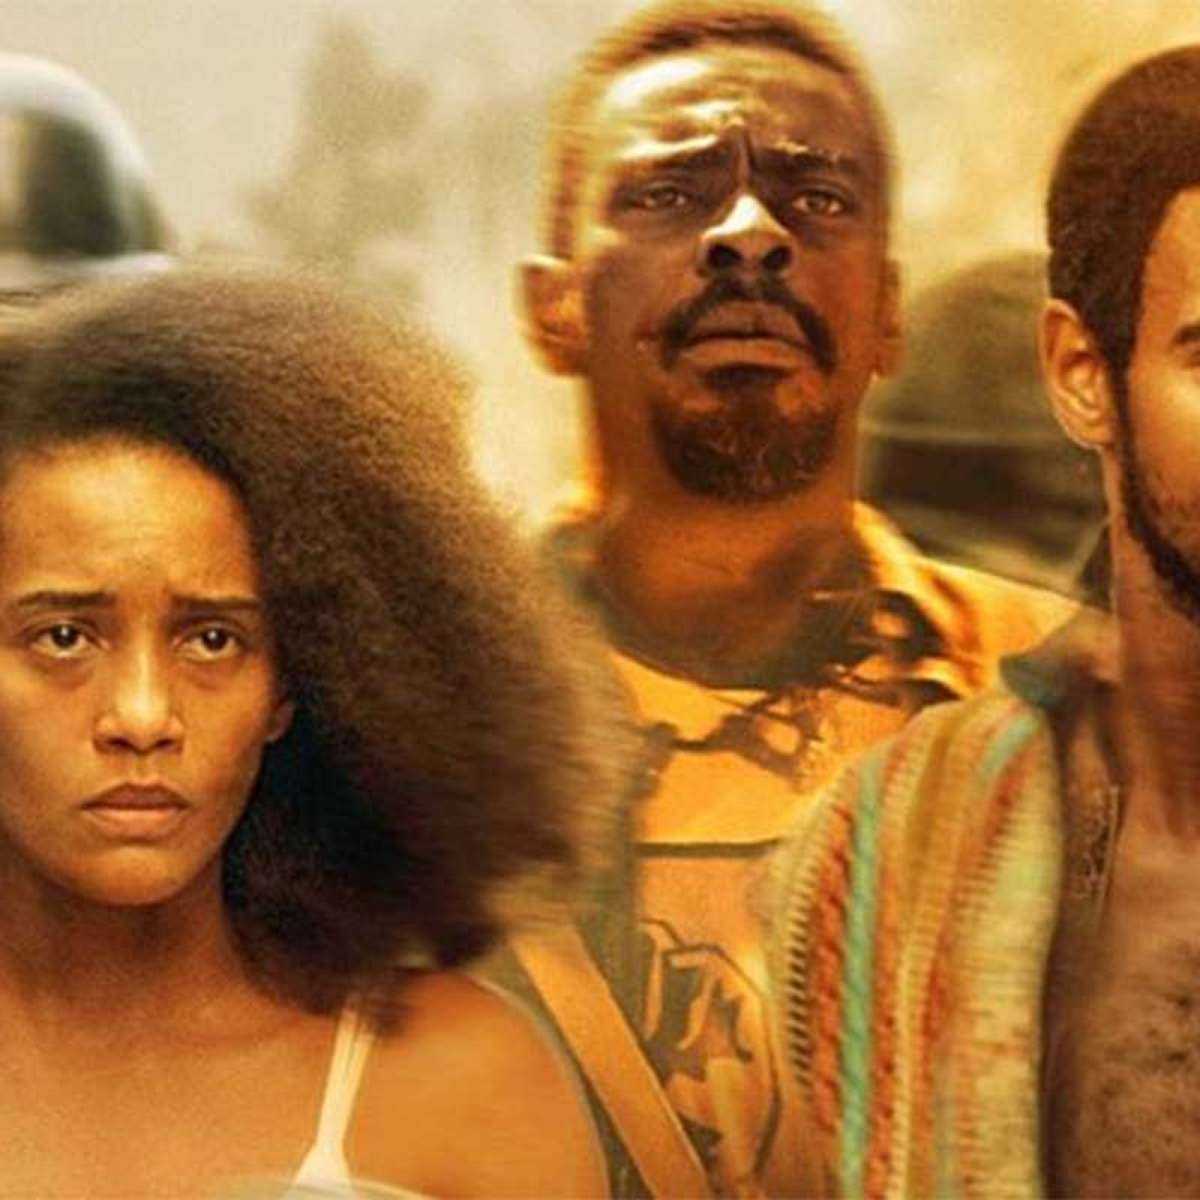 Filme provoca debate sobre violência racial e de gênero